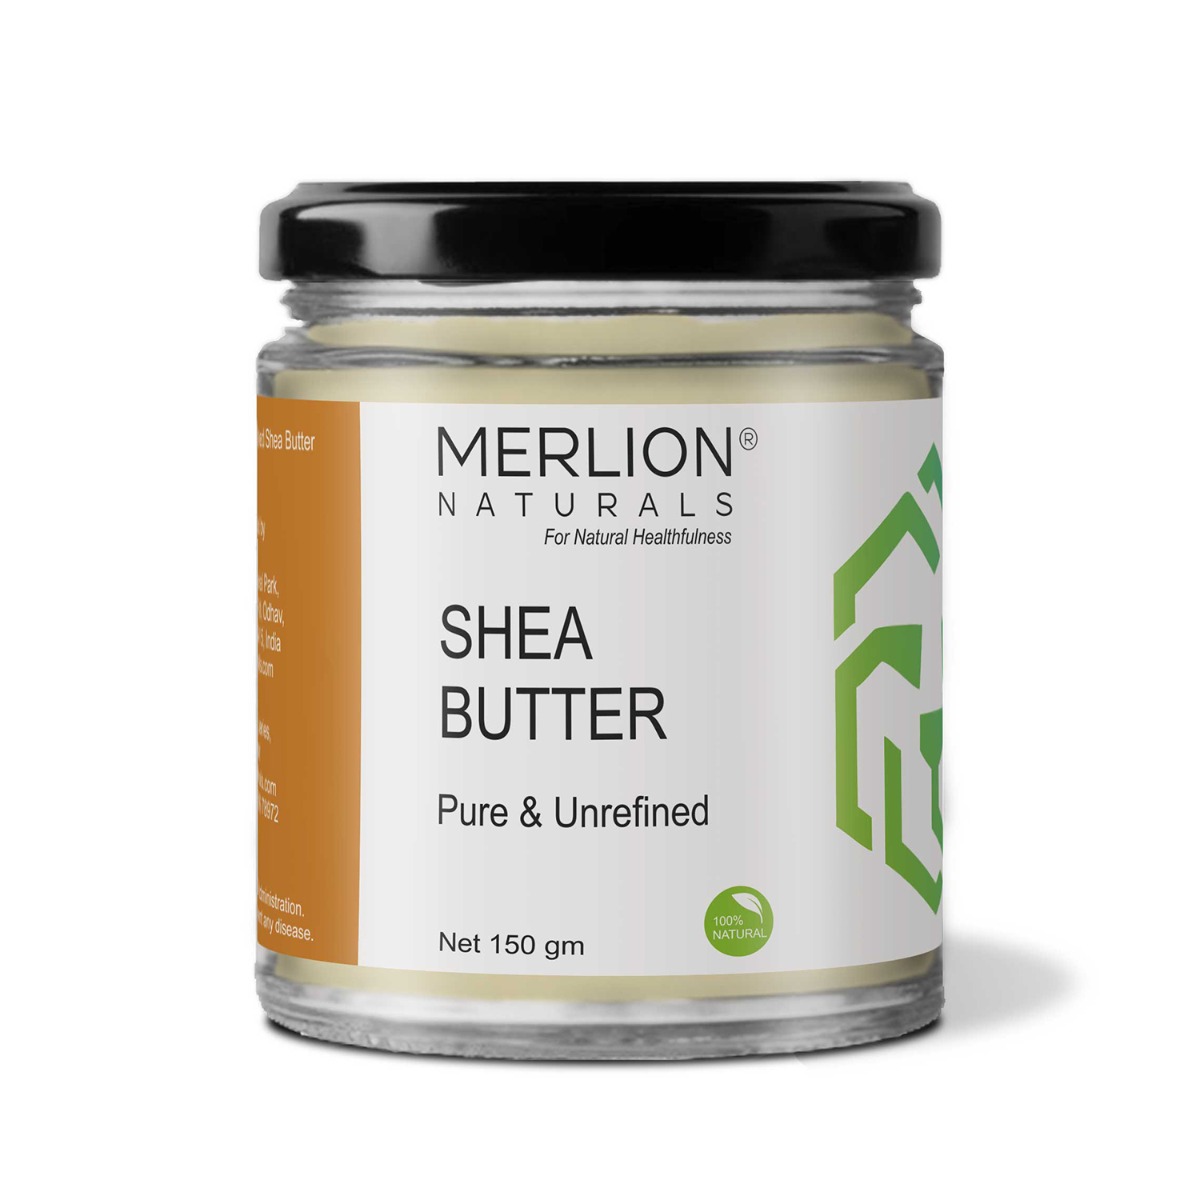 Merlion Naturals Shea Butter, 150gm